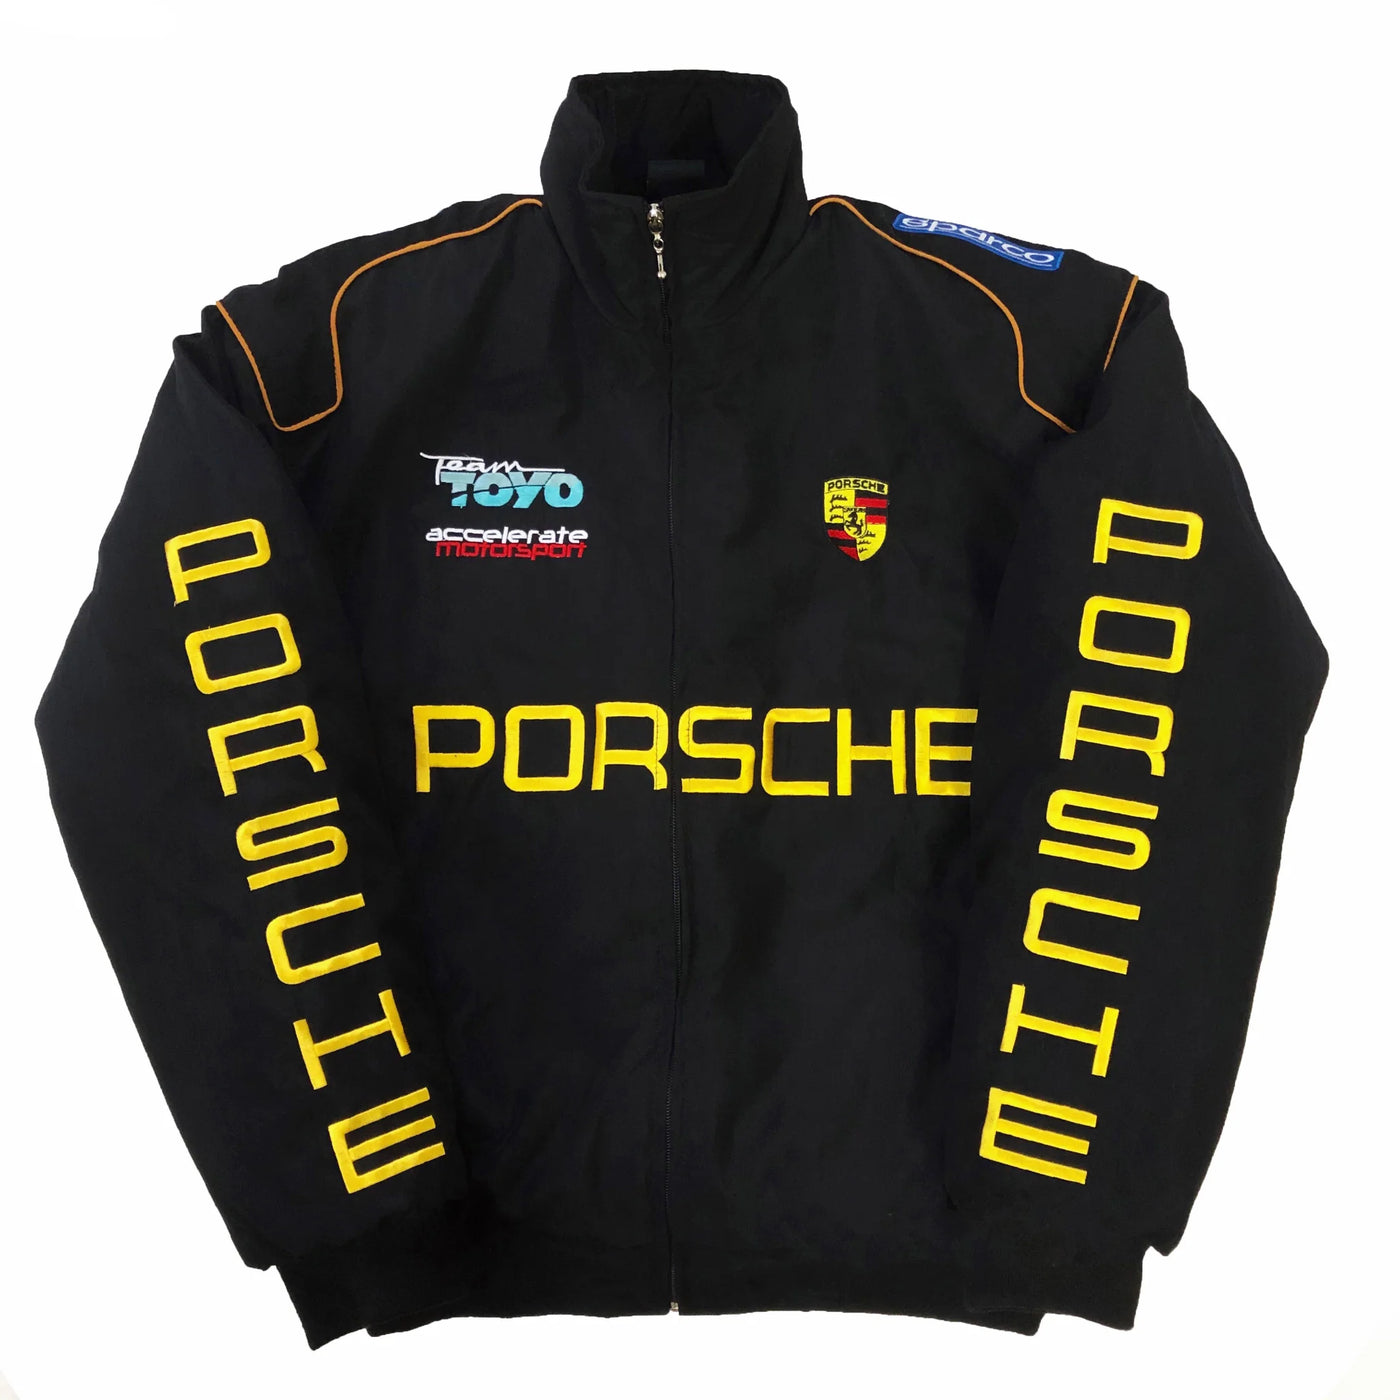 Vintage Racing Porsche Jacket